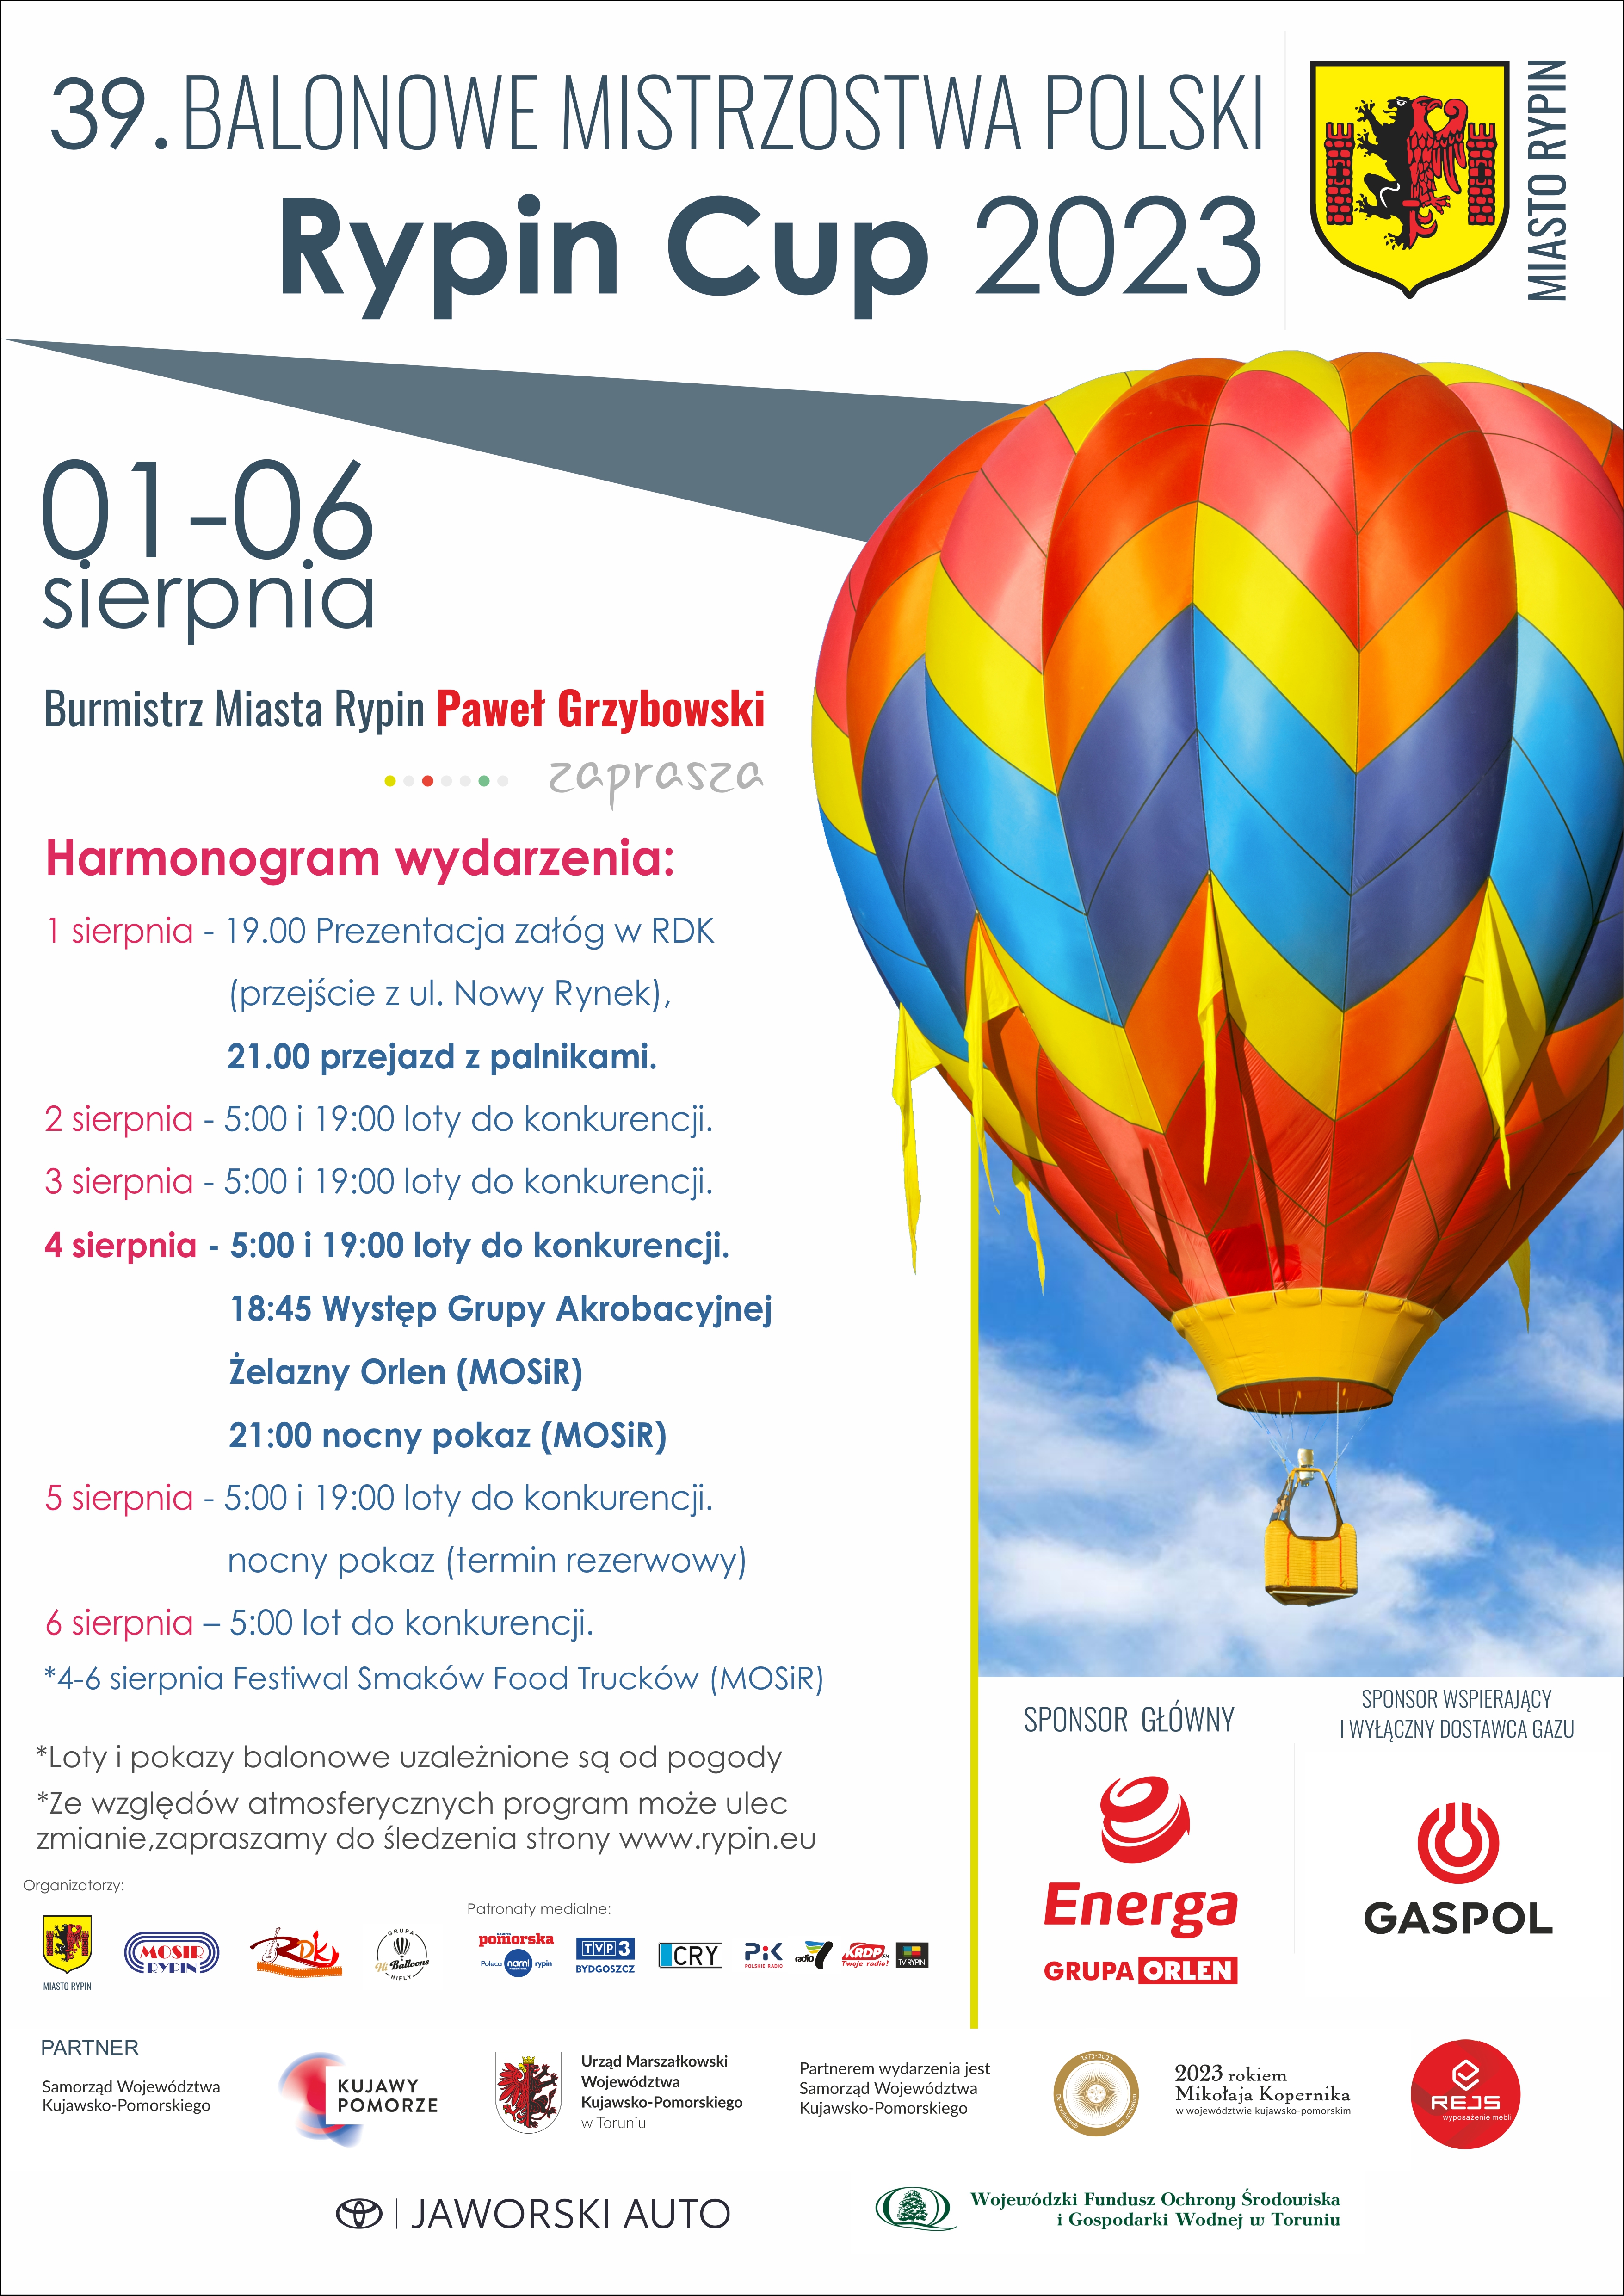 Plakat promujący Balonowe Mistrzostwa Polski